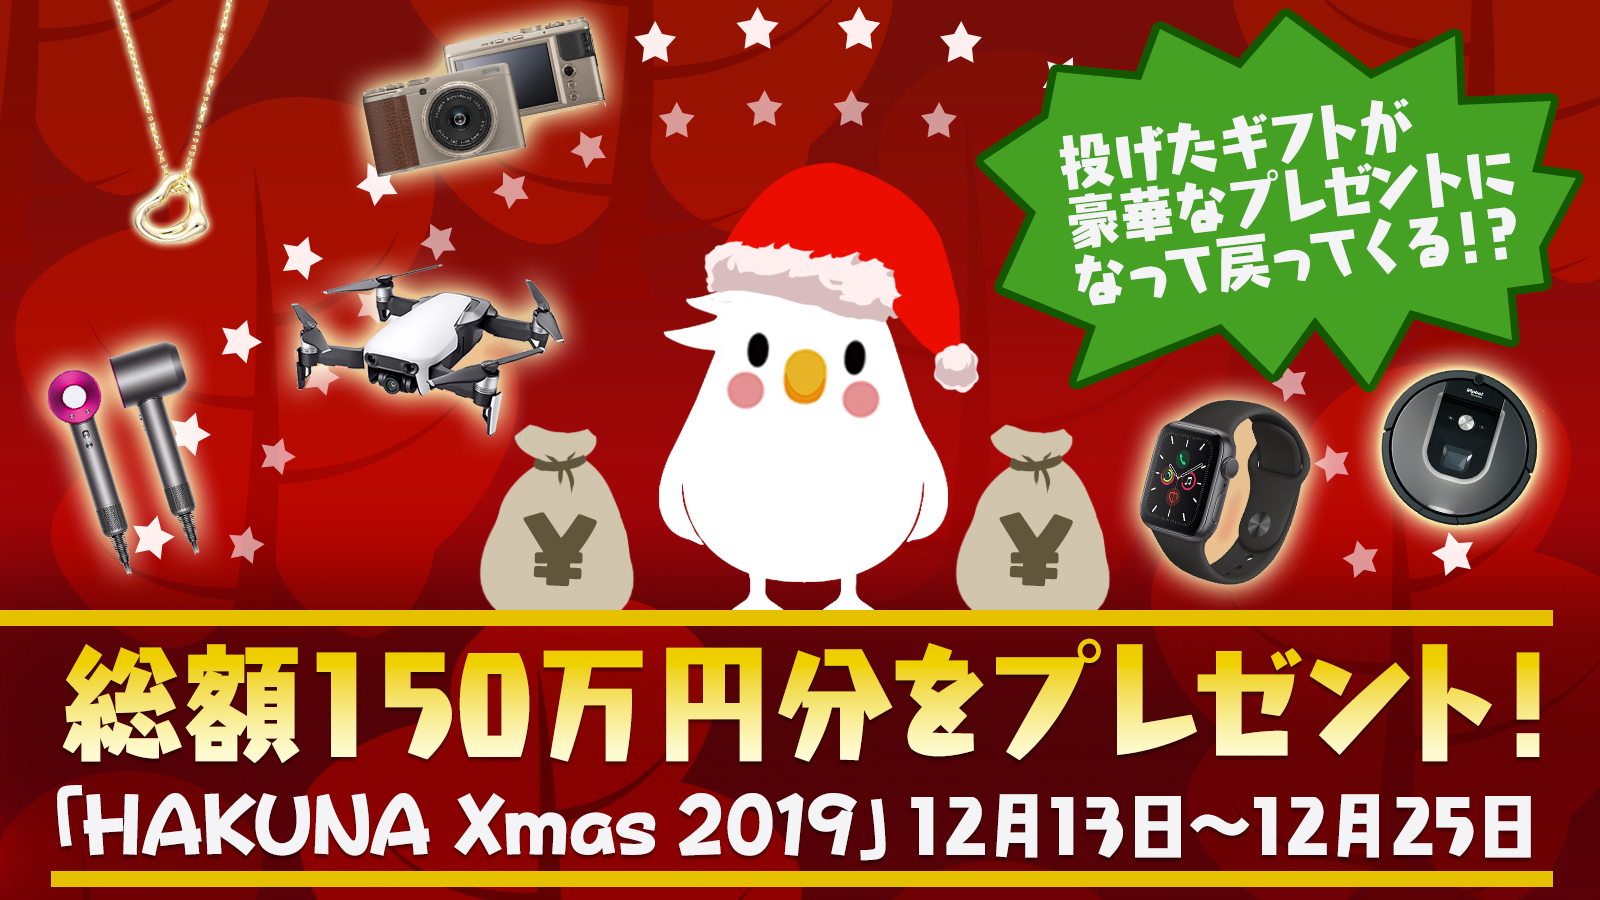 ソーシャルライブアプリ Hakuna Live 本日より総額150万円getできるクリスマスイベント開催 株式会社movefast Companyのプレスリリース